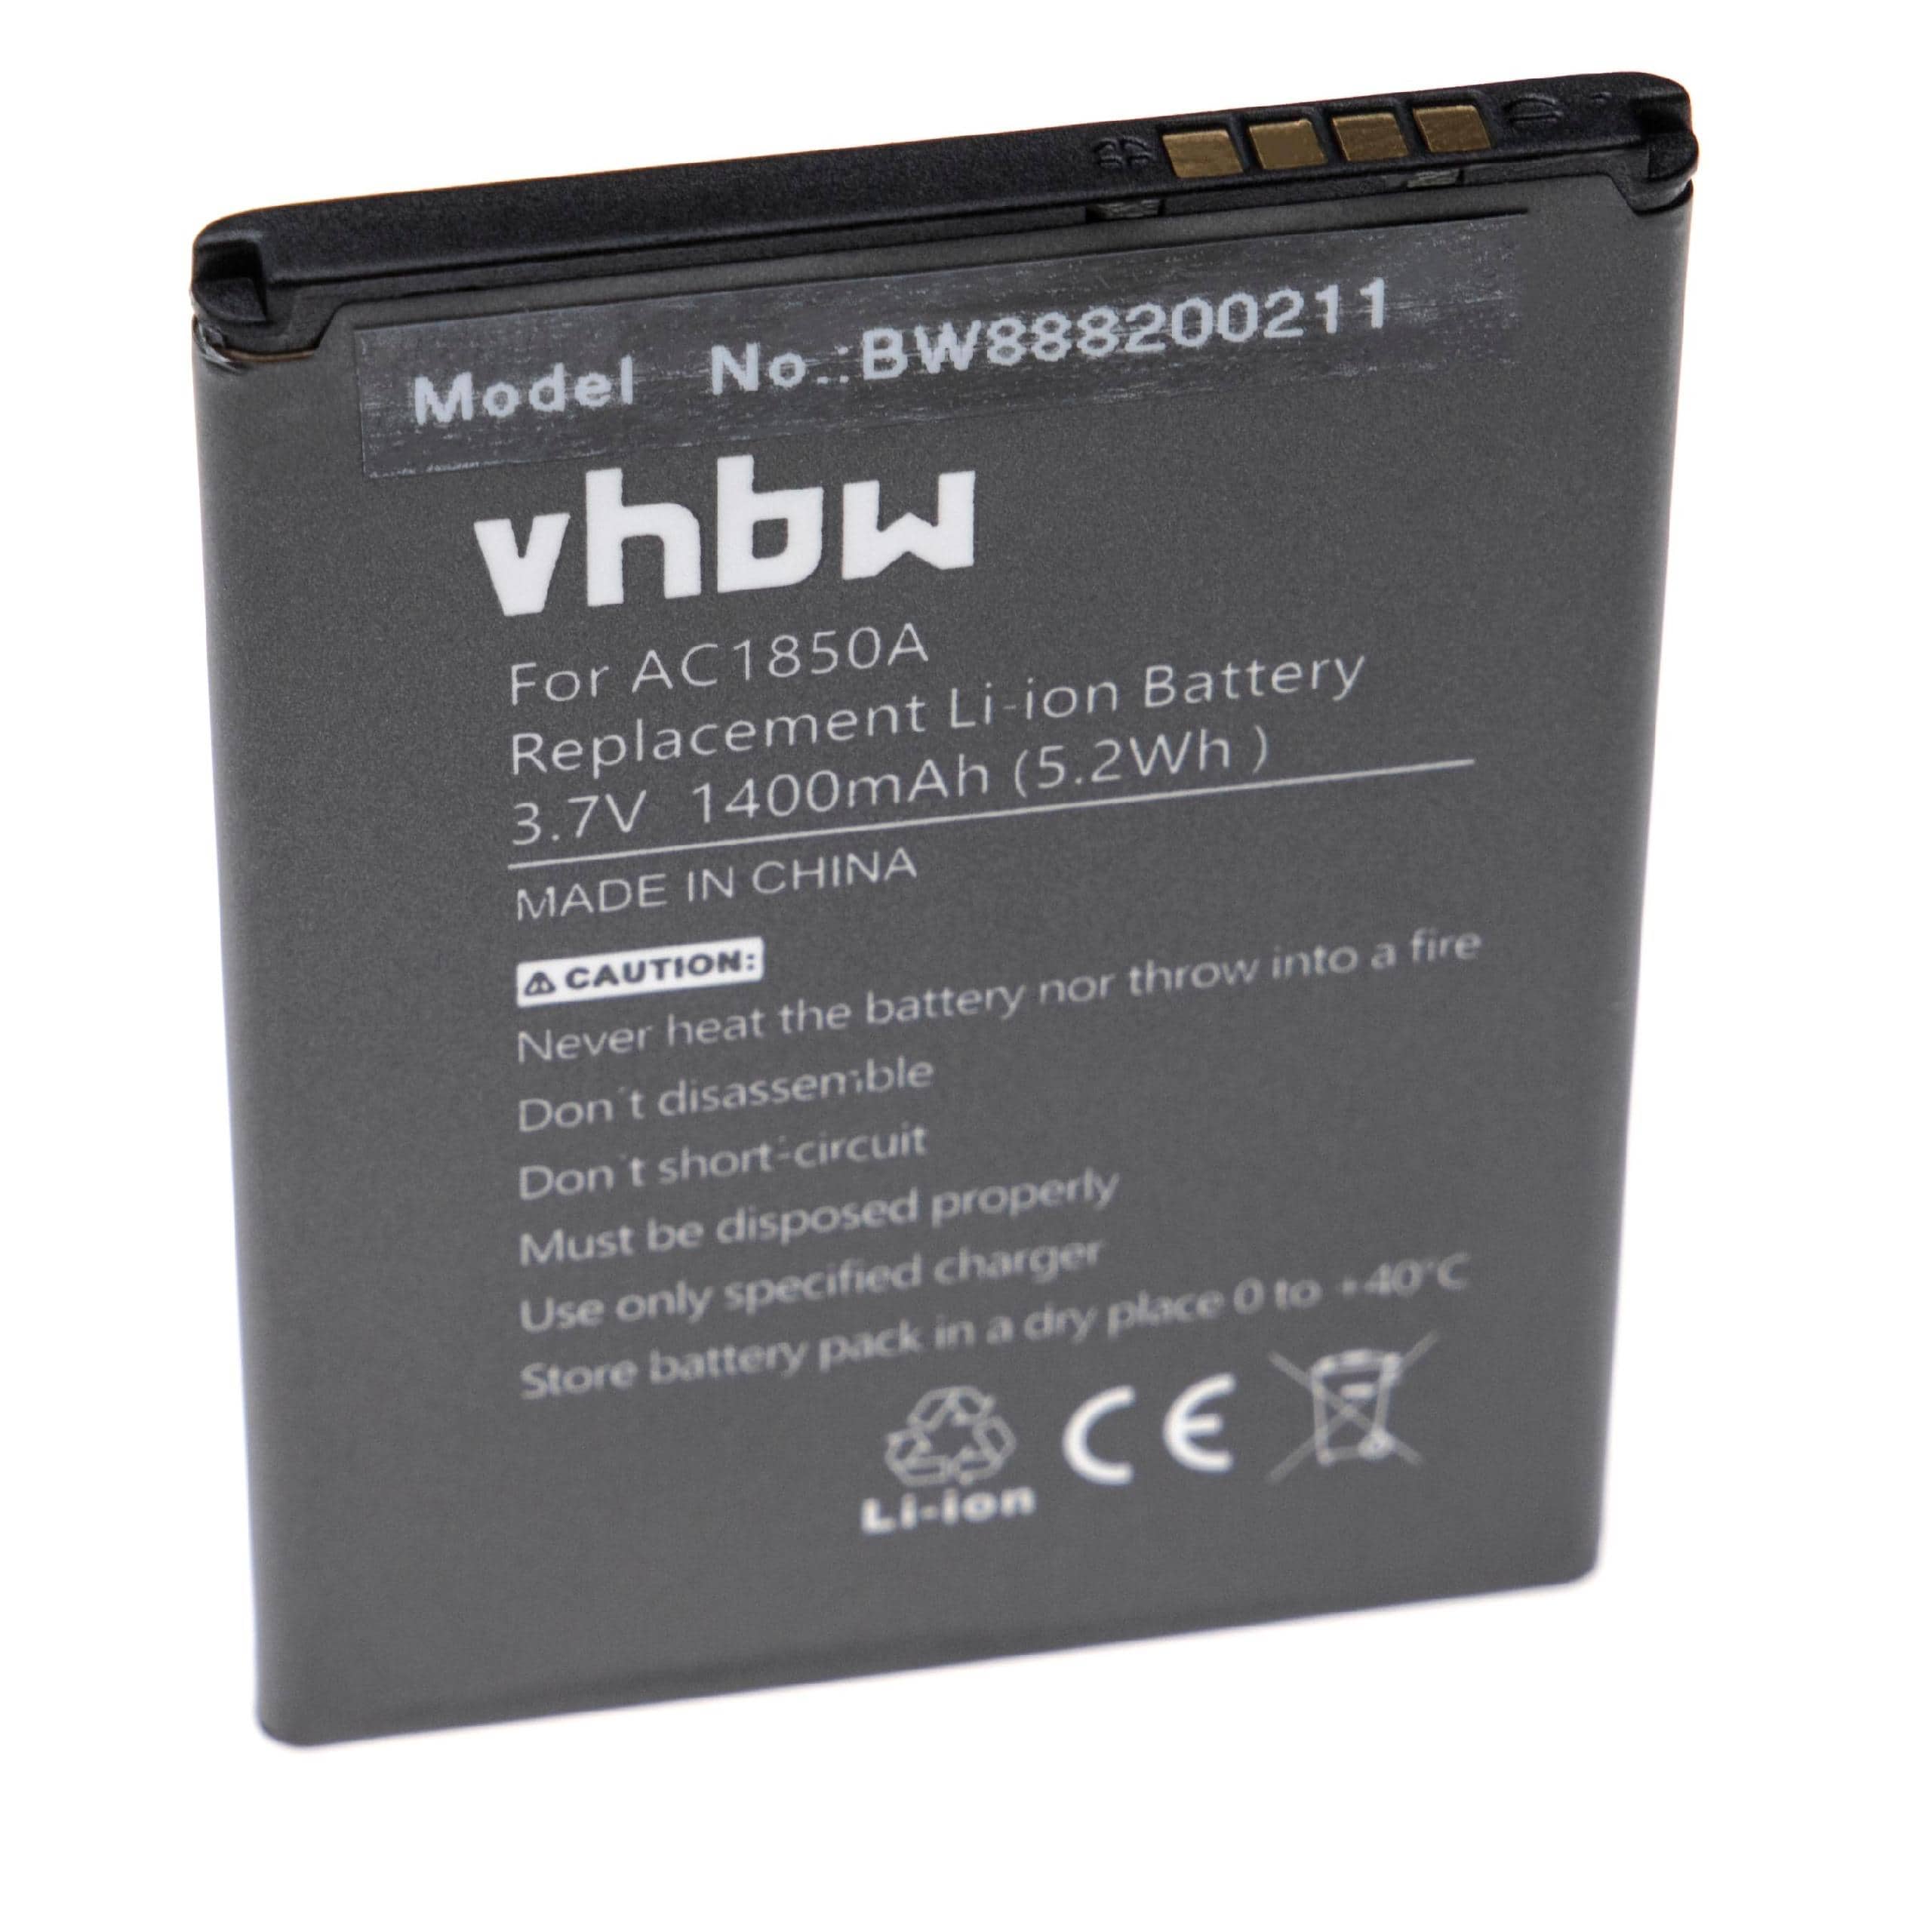 Batterie remplace Archos AC1850A, TBW5986, AC300CA pour téléphone portable - 1400mAh, 3,7V, Li-ion